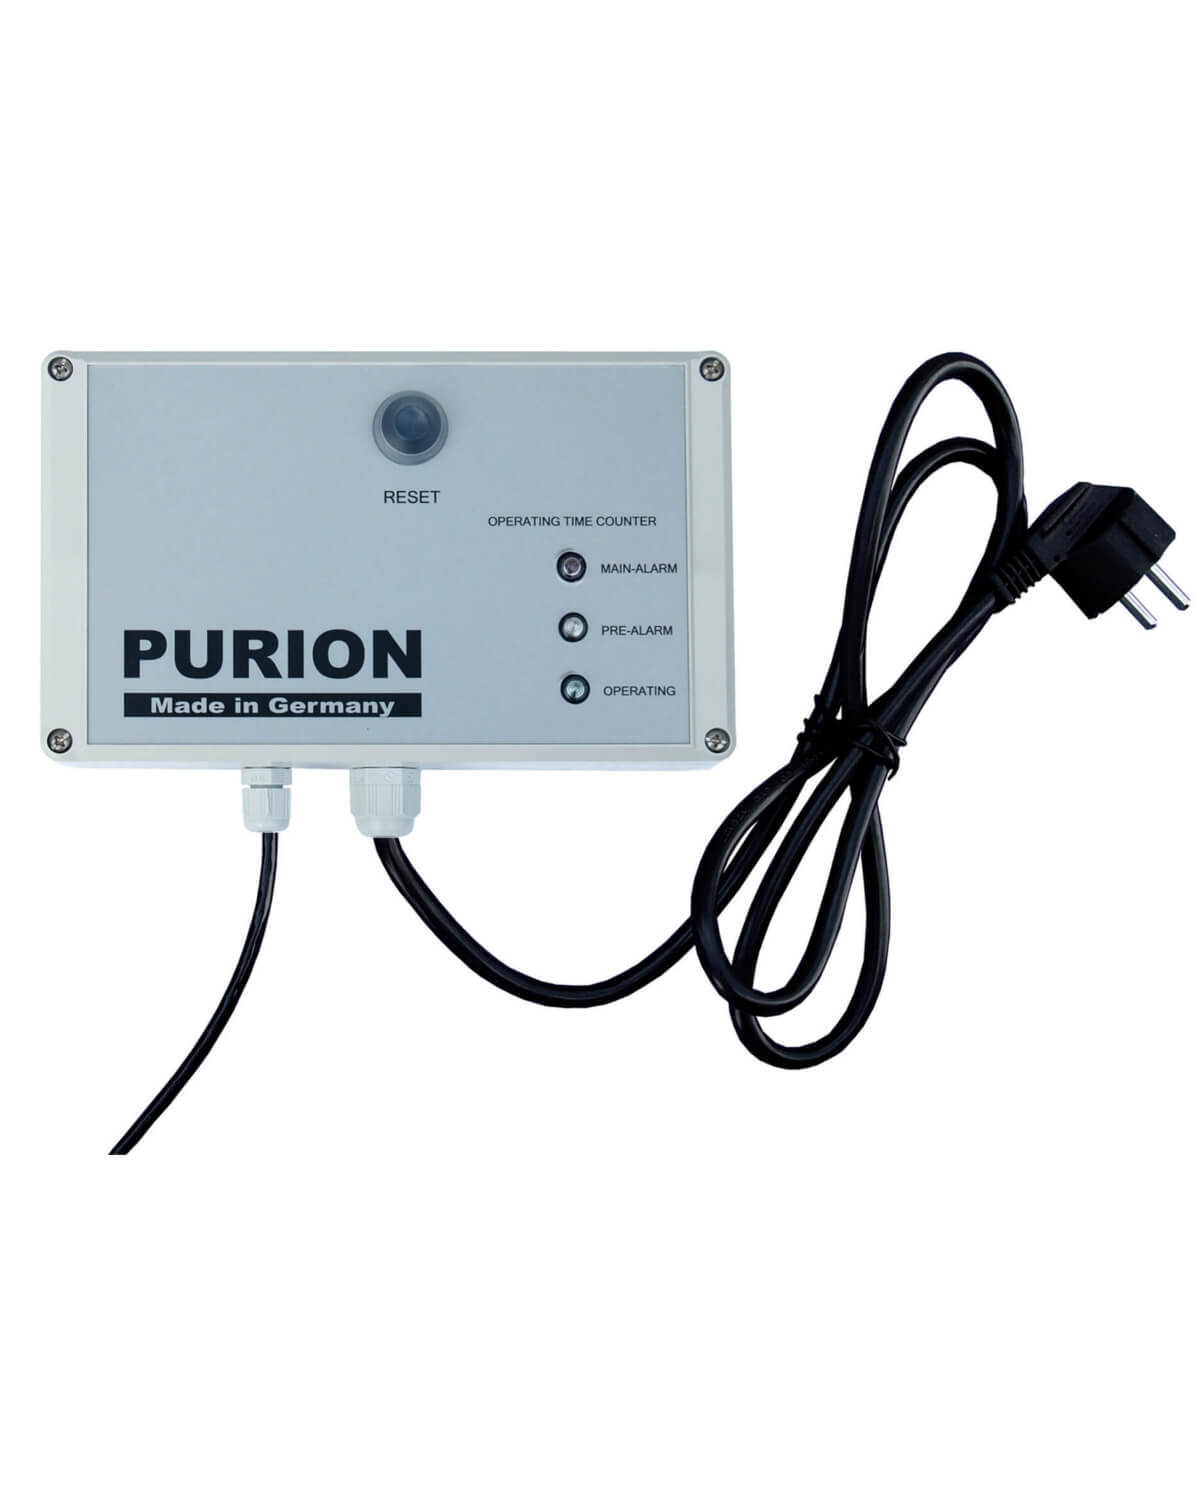 Purion GmbH ist ein UV-Filter, der Trinkwasser reinigt, indem er Verunreinigungen effektiv herausfiltert. Mit dem PURION 1000 Starter genießen Sie sauberes und sicheres Trinkwasser.